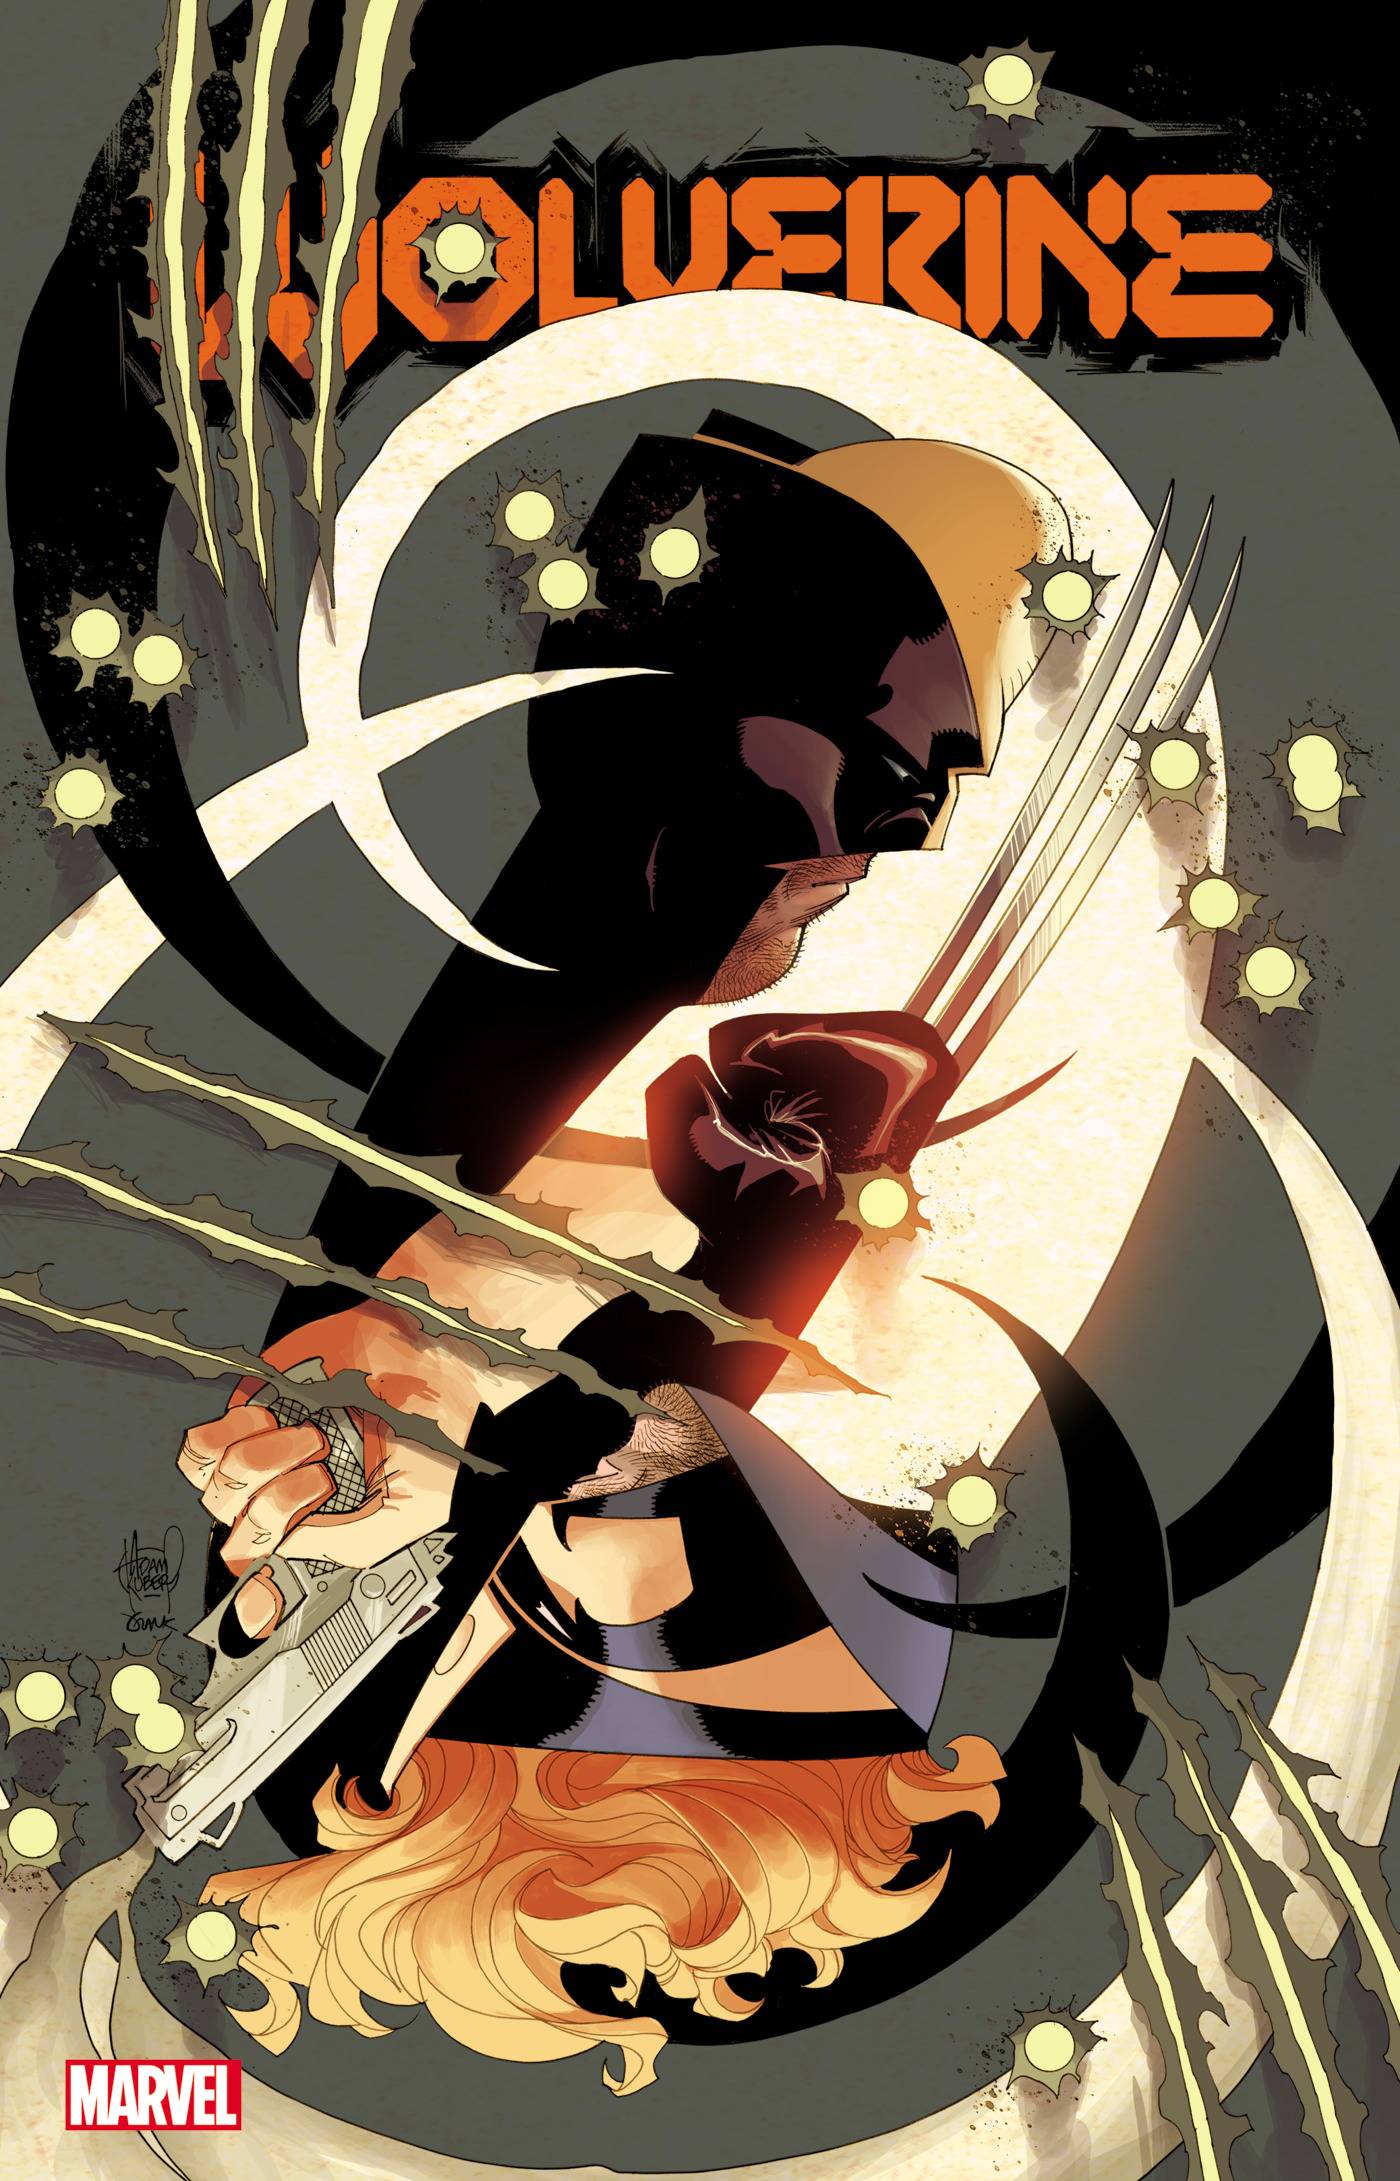 Wolverine #17